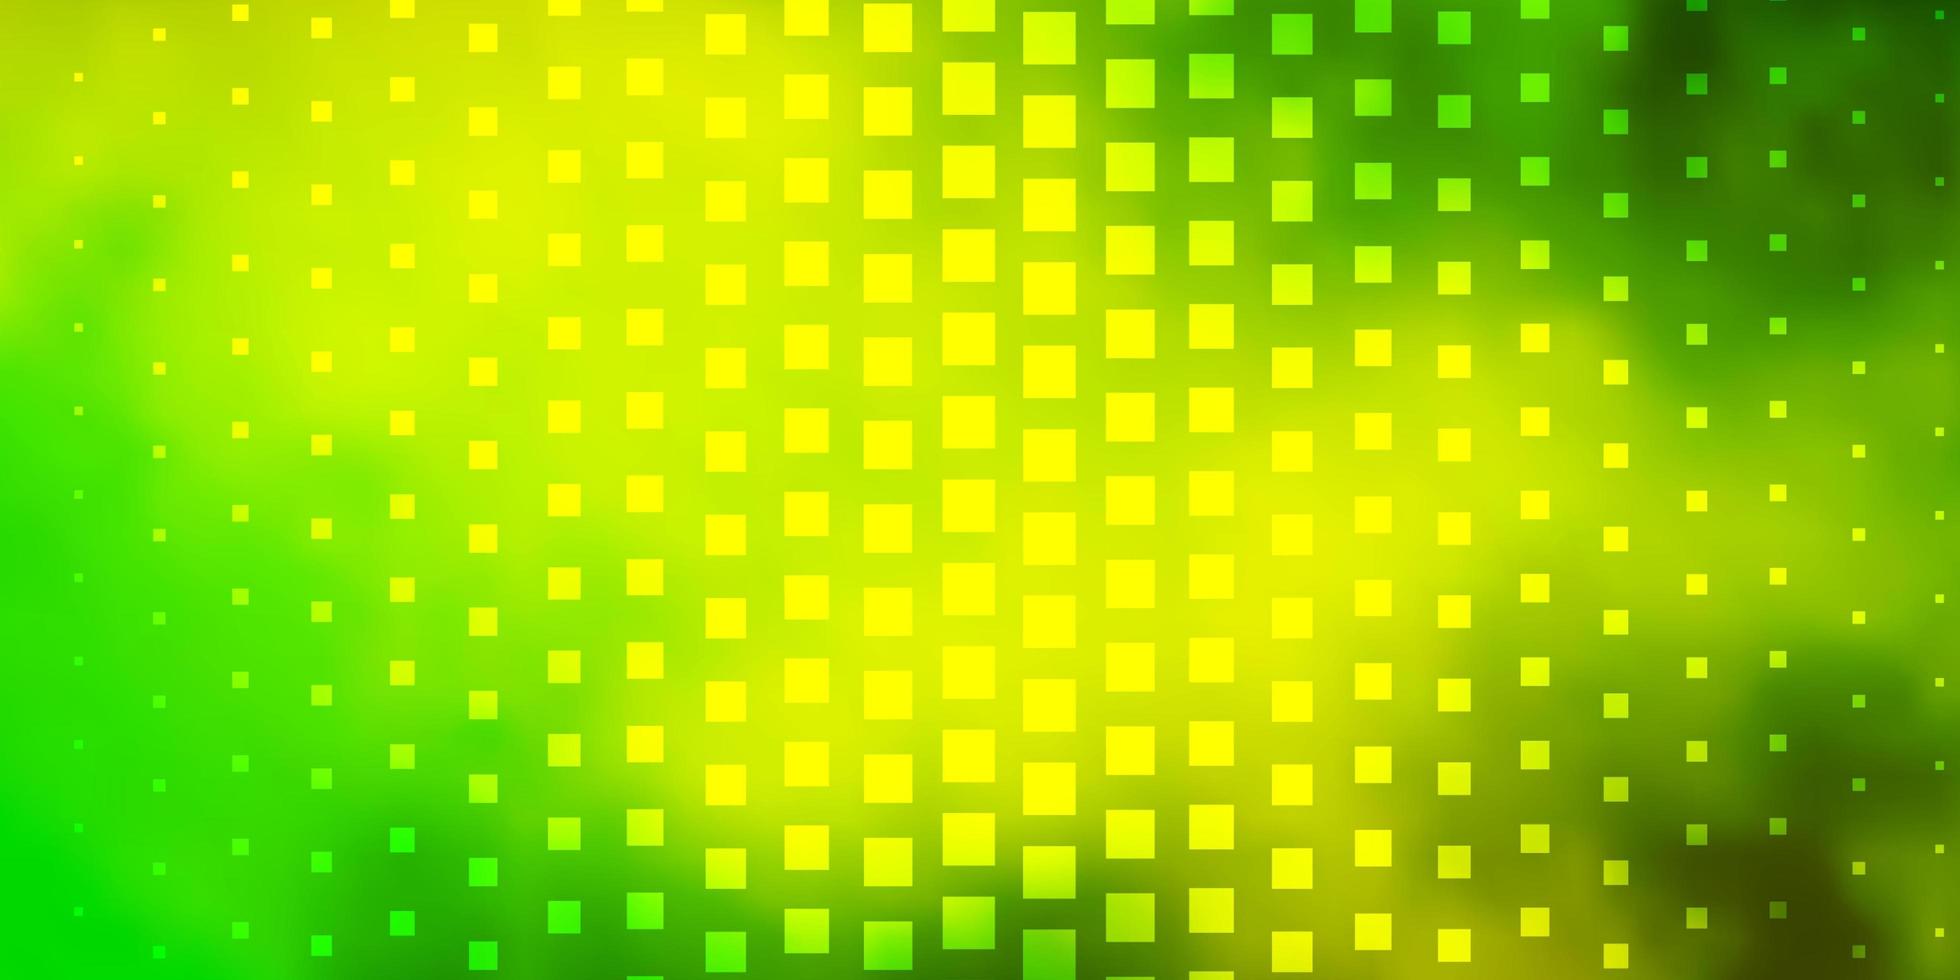 ljusgrön gul vektormall i rektanglar illustration med en uppsättning av lutande rektanglar mönster för affärshäfte broschyrer vektor